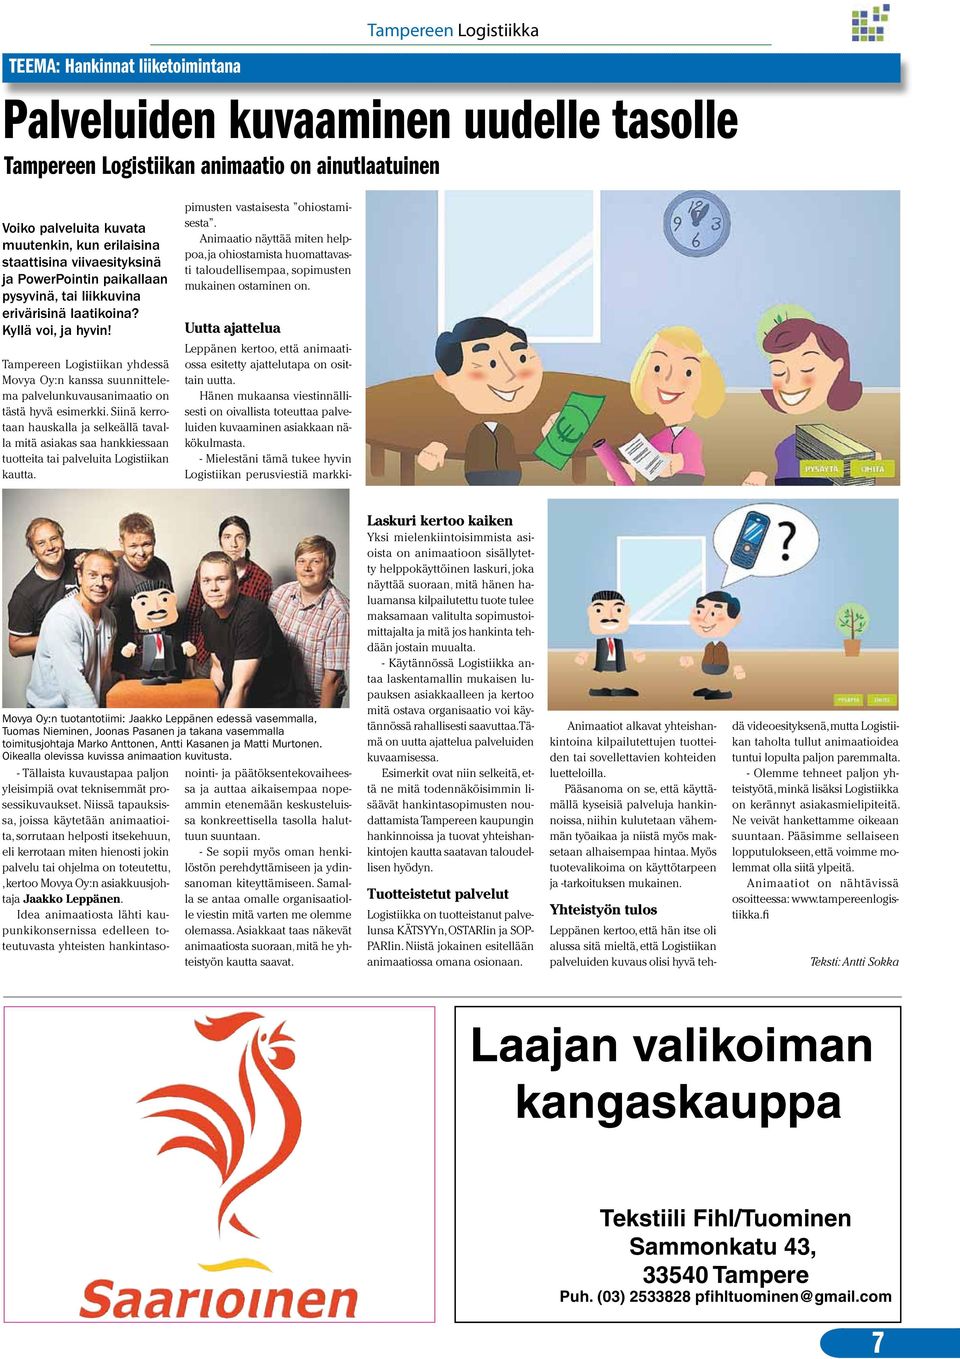 Tampereen Logistiikan yhdessä Movya Oy:n kanssa suunnittelema palvelunkuvausanimaatio on tästä hyvä esimerkki.